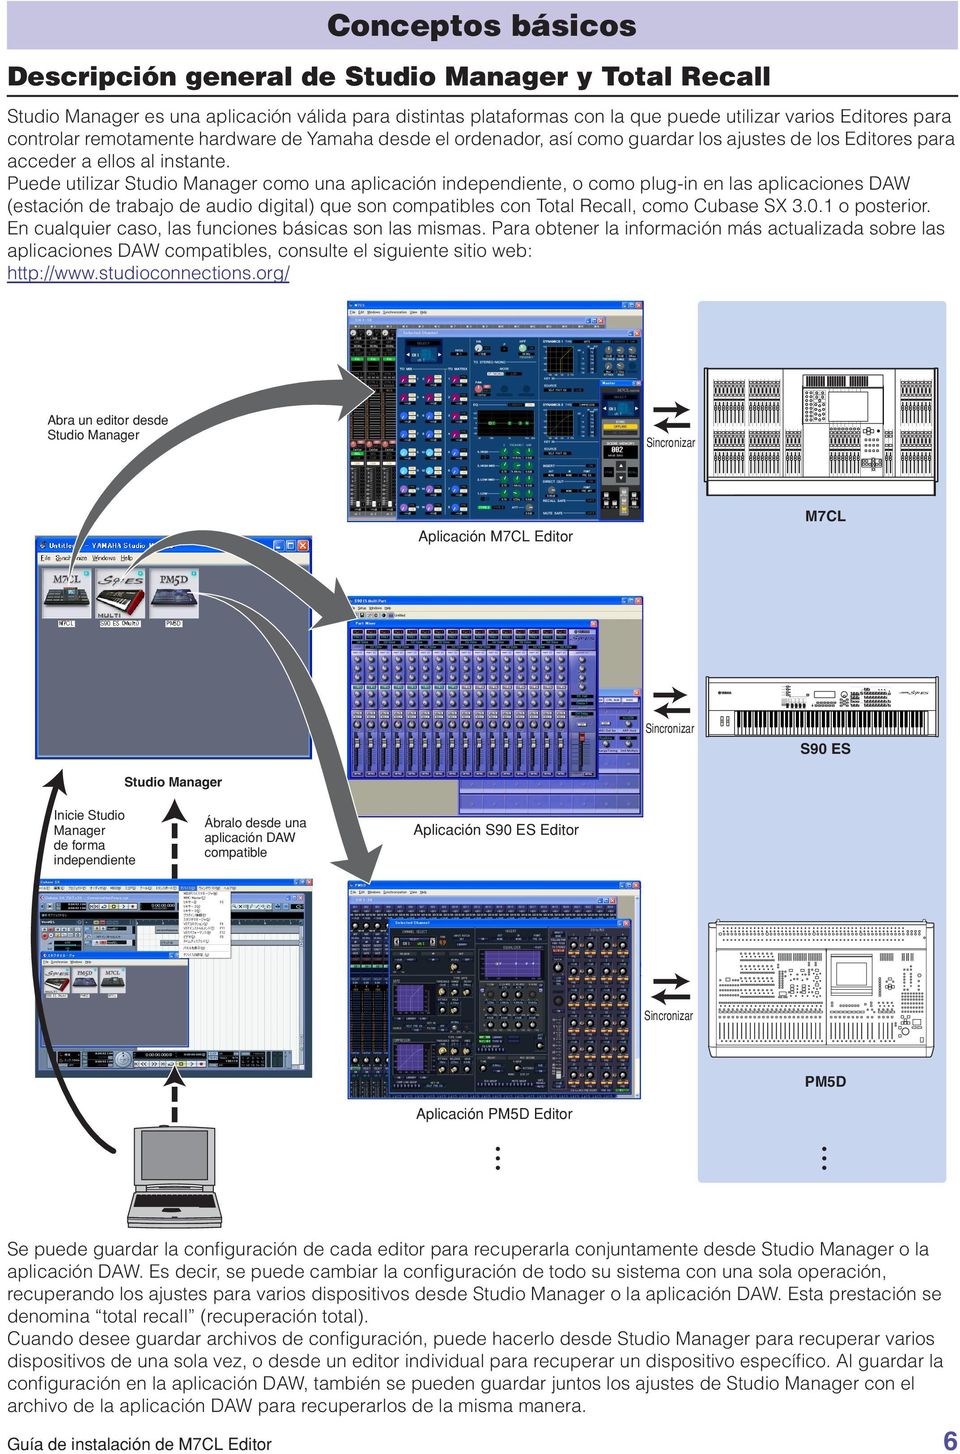 Puede utilizar Studio Manager como una aplicación independiente, o como plug-in en las aplicaciones DAW (estación de trabajo de audio digital) que son compatibles con Total Recall, como Cubase SX 3.0.